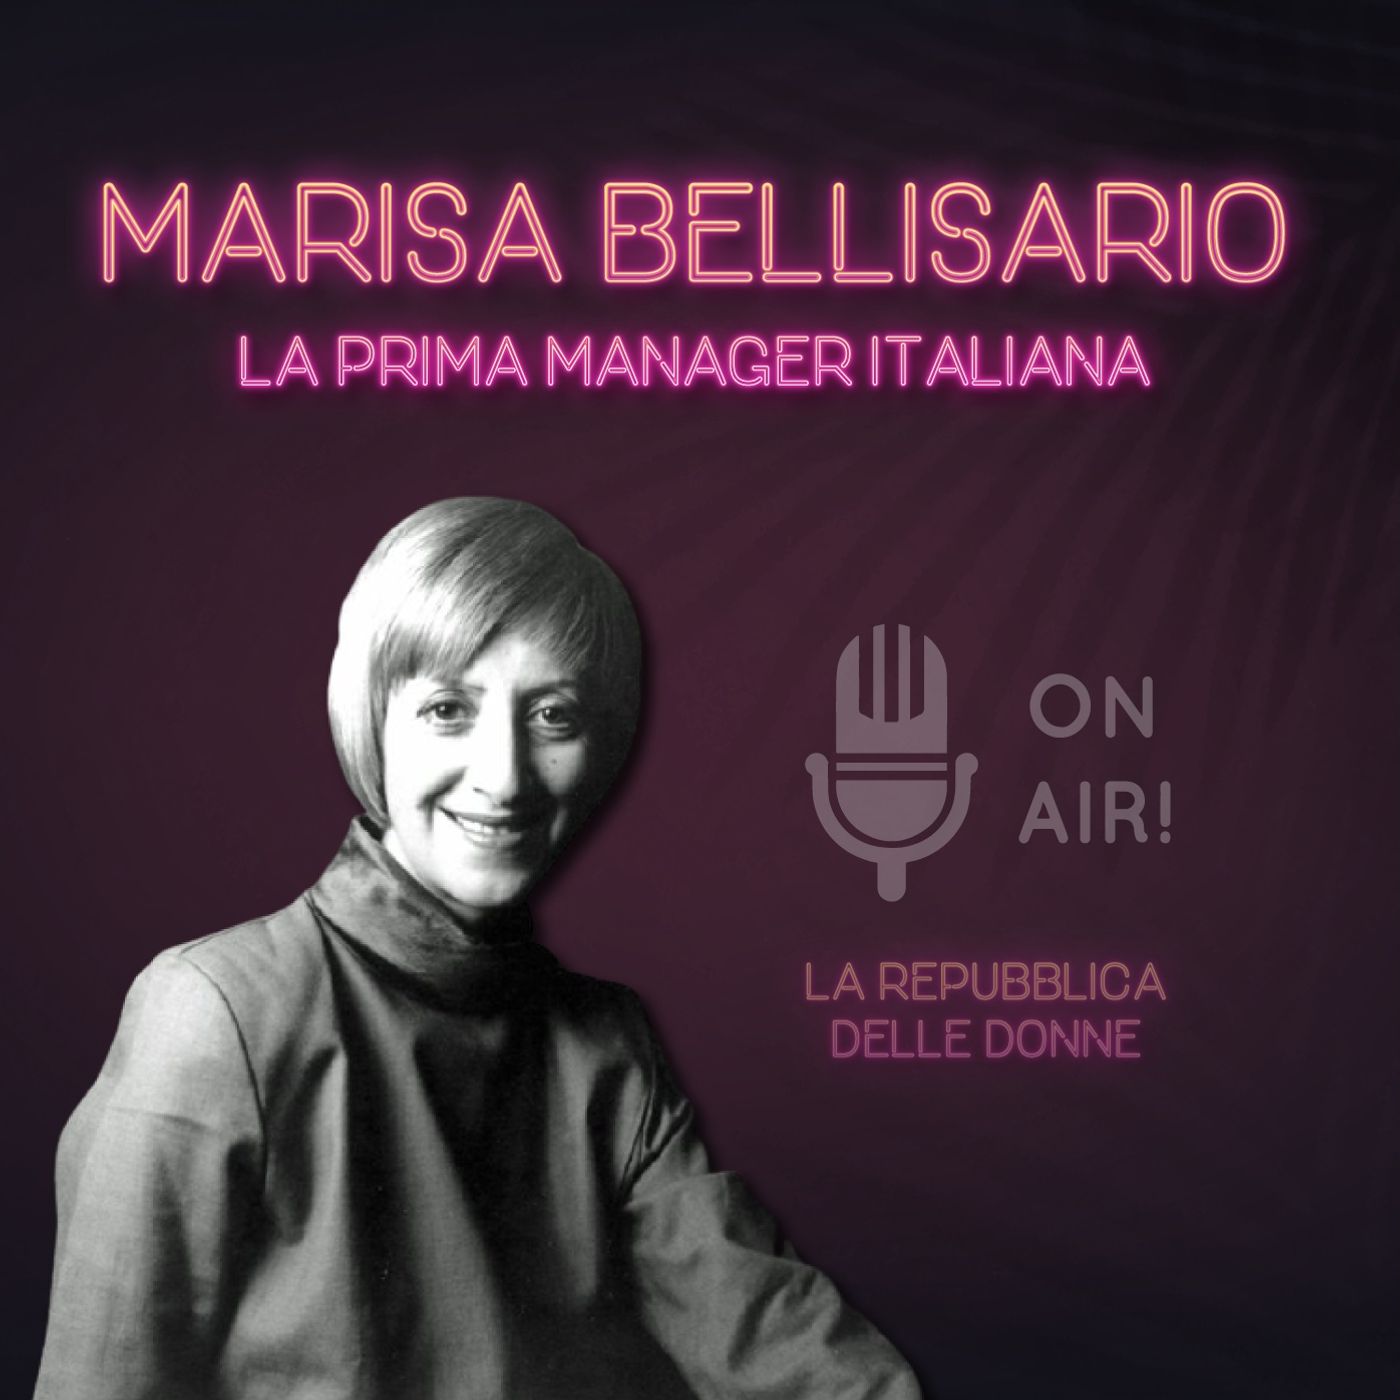 La Repubblica delle donne - 4° Episodio. Marisa Bellisario, la prima manager italiana. Di Mario Nanni